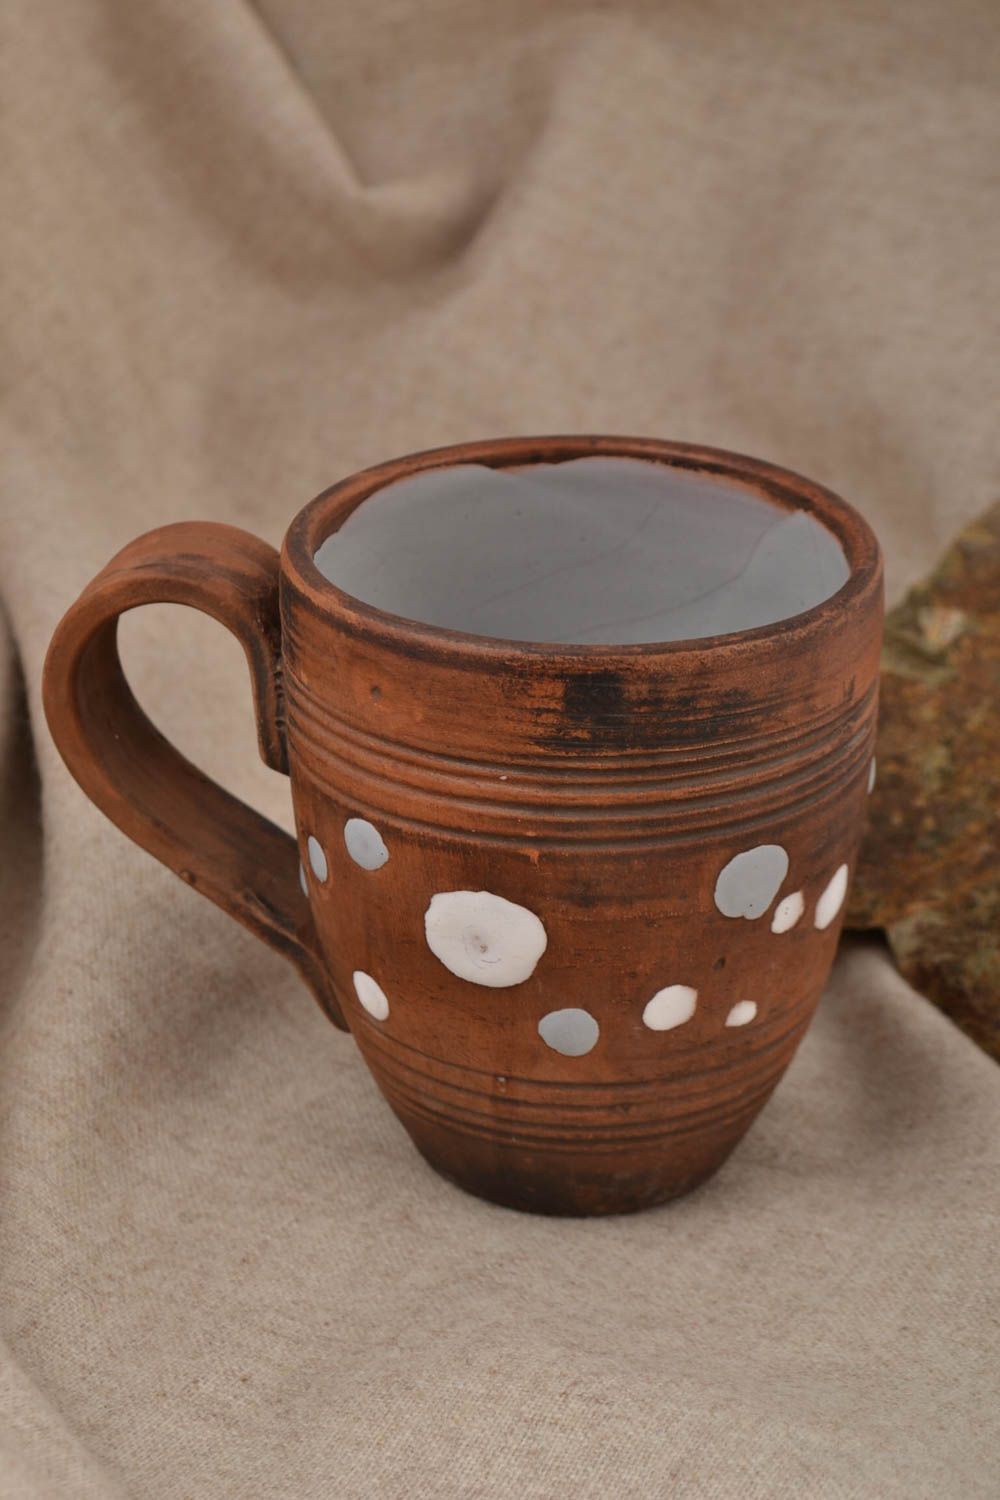 XL 15 oz tea mug in brown color with handle 0,68 lb photo 1